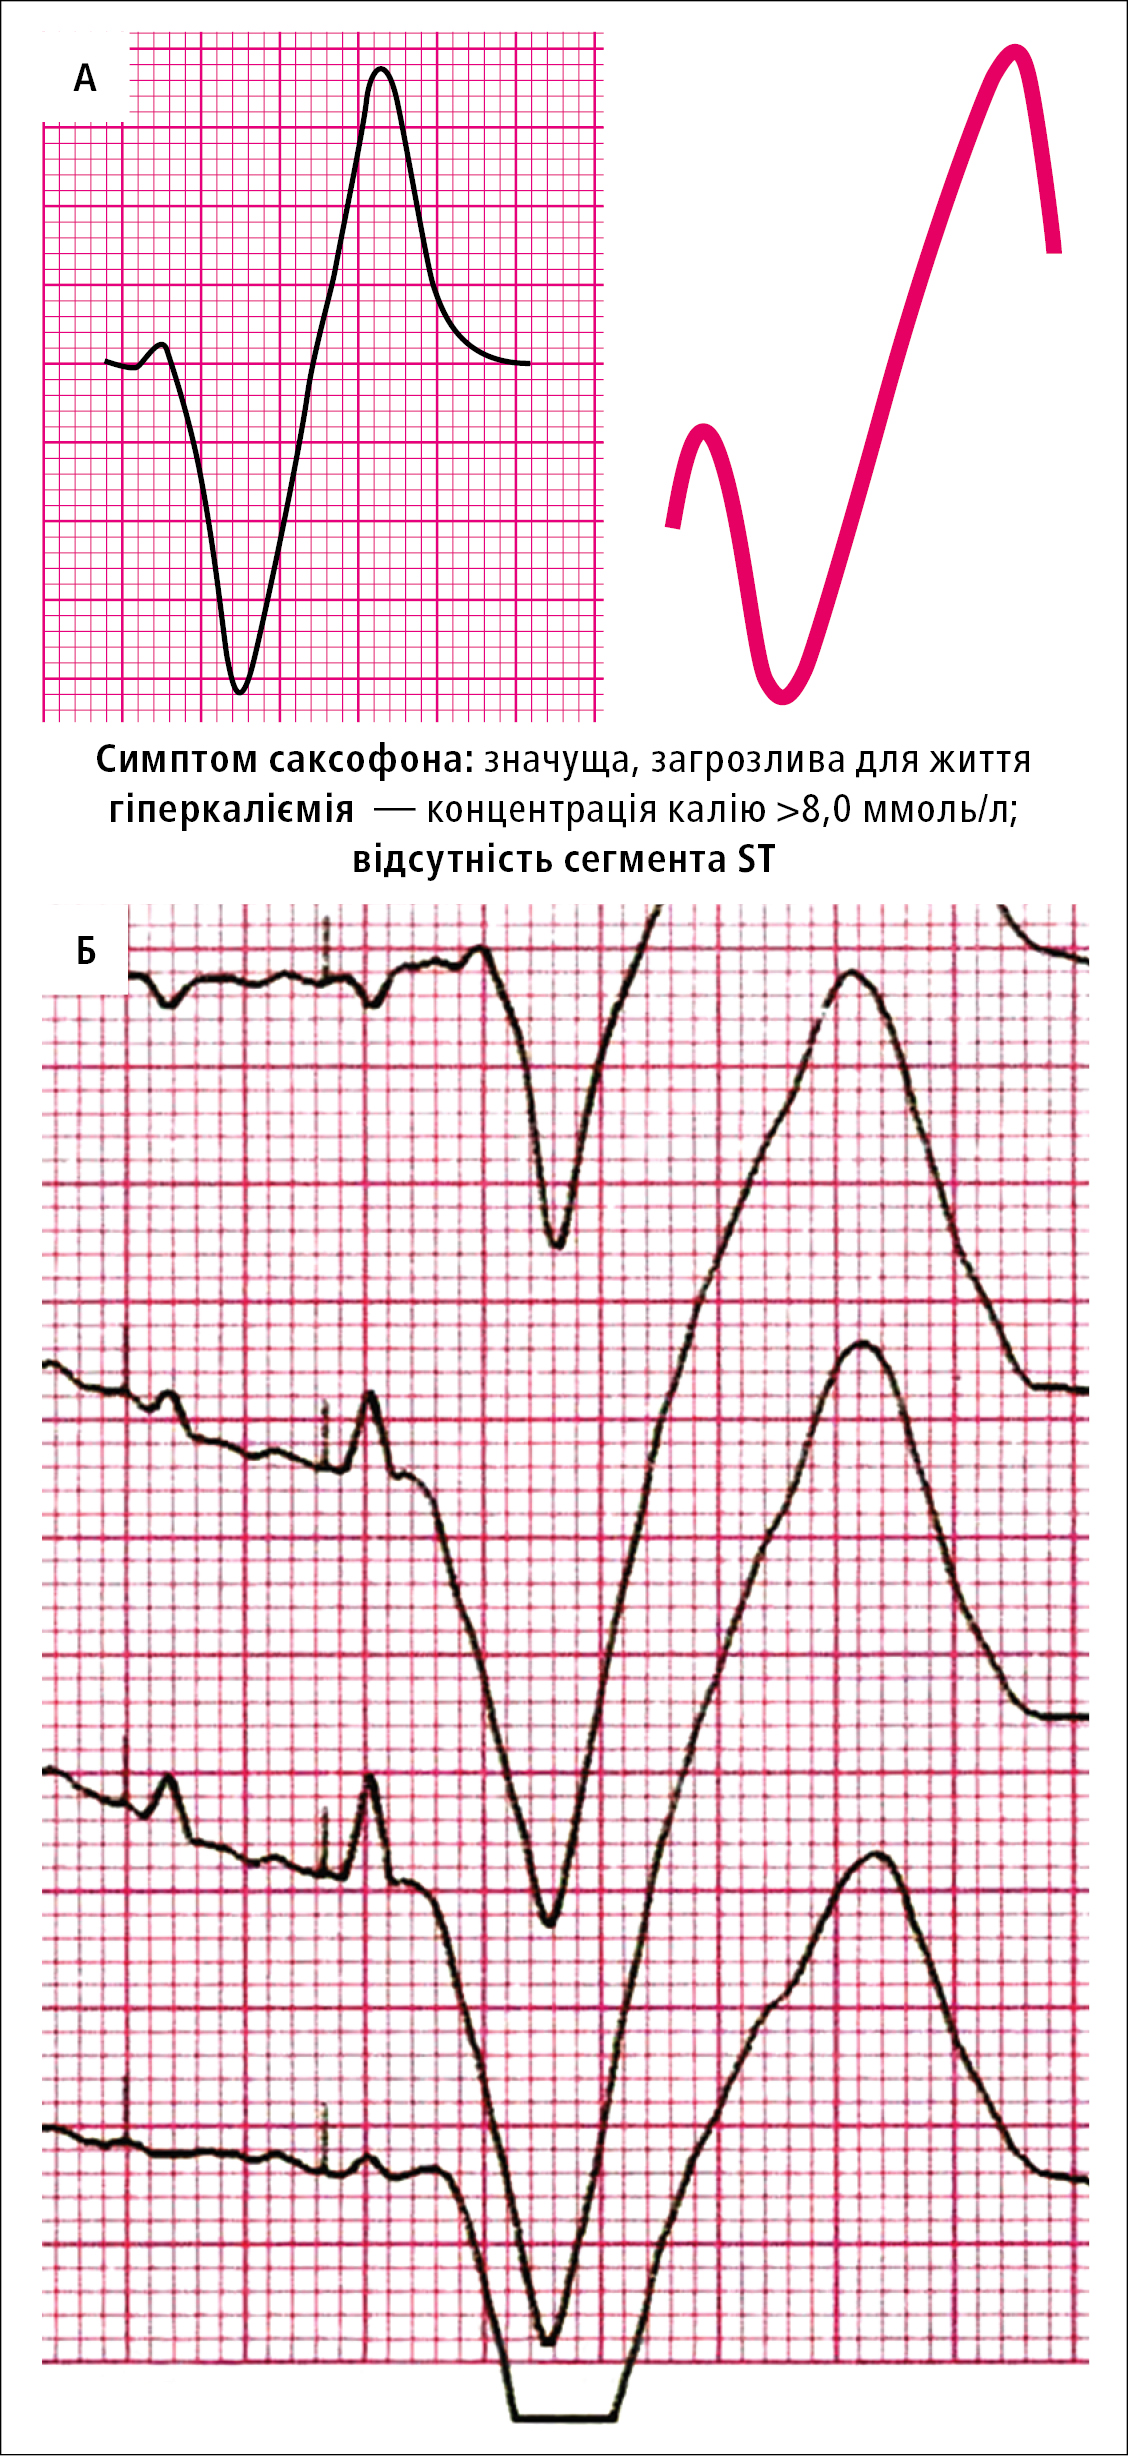 A — схематичне зображення симптому саксофона. Б — симптом саксофона у обговорюваного хворого — збільшення комплексу QRS з відведень V4, V5 i V6